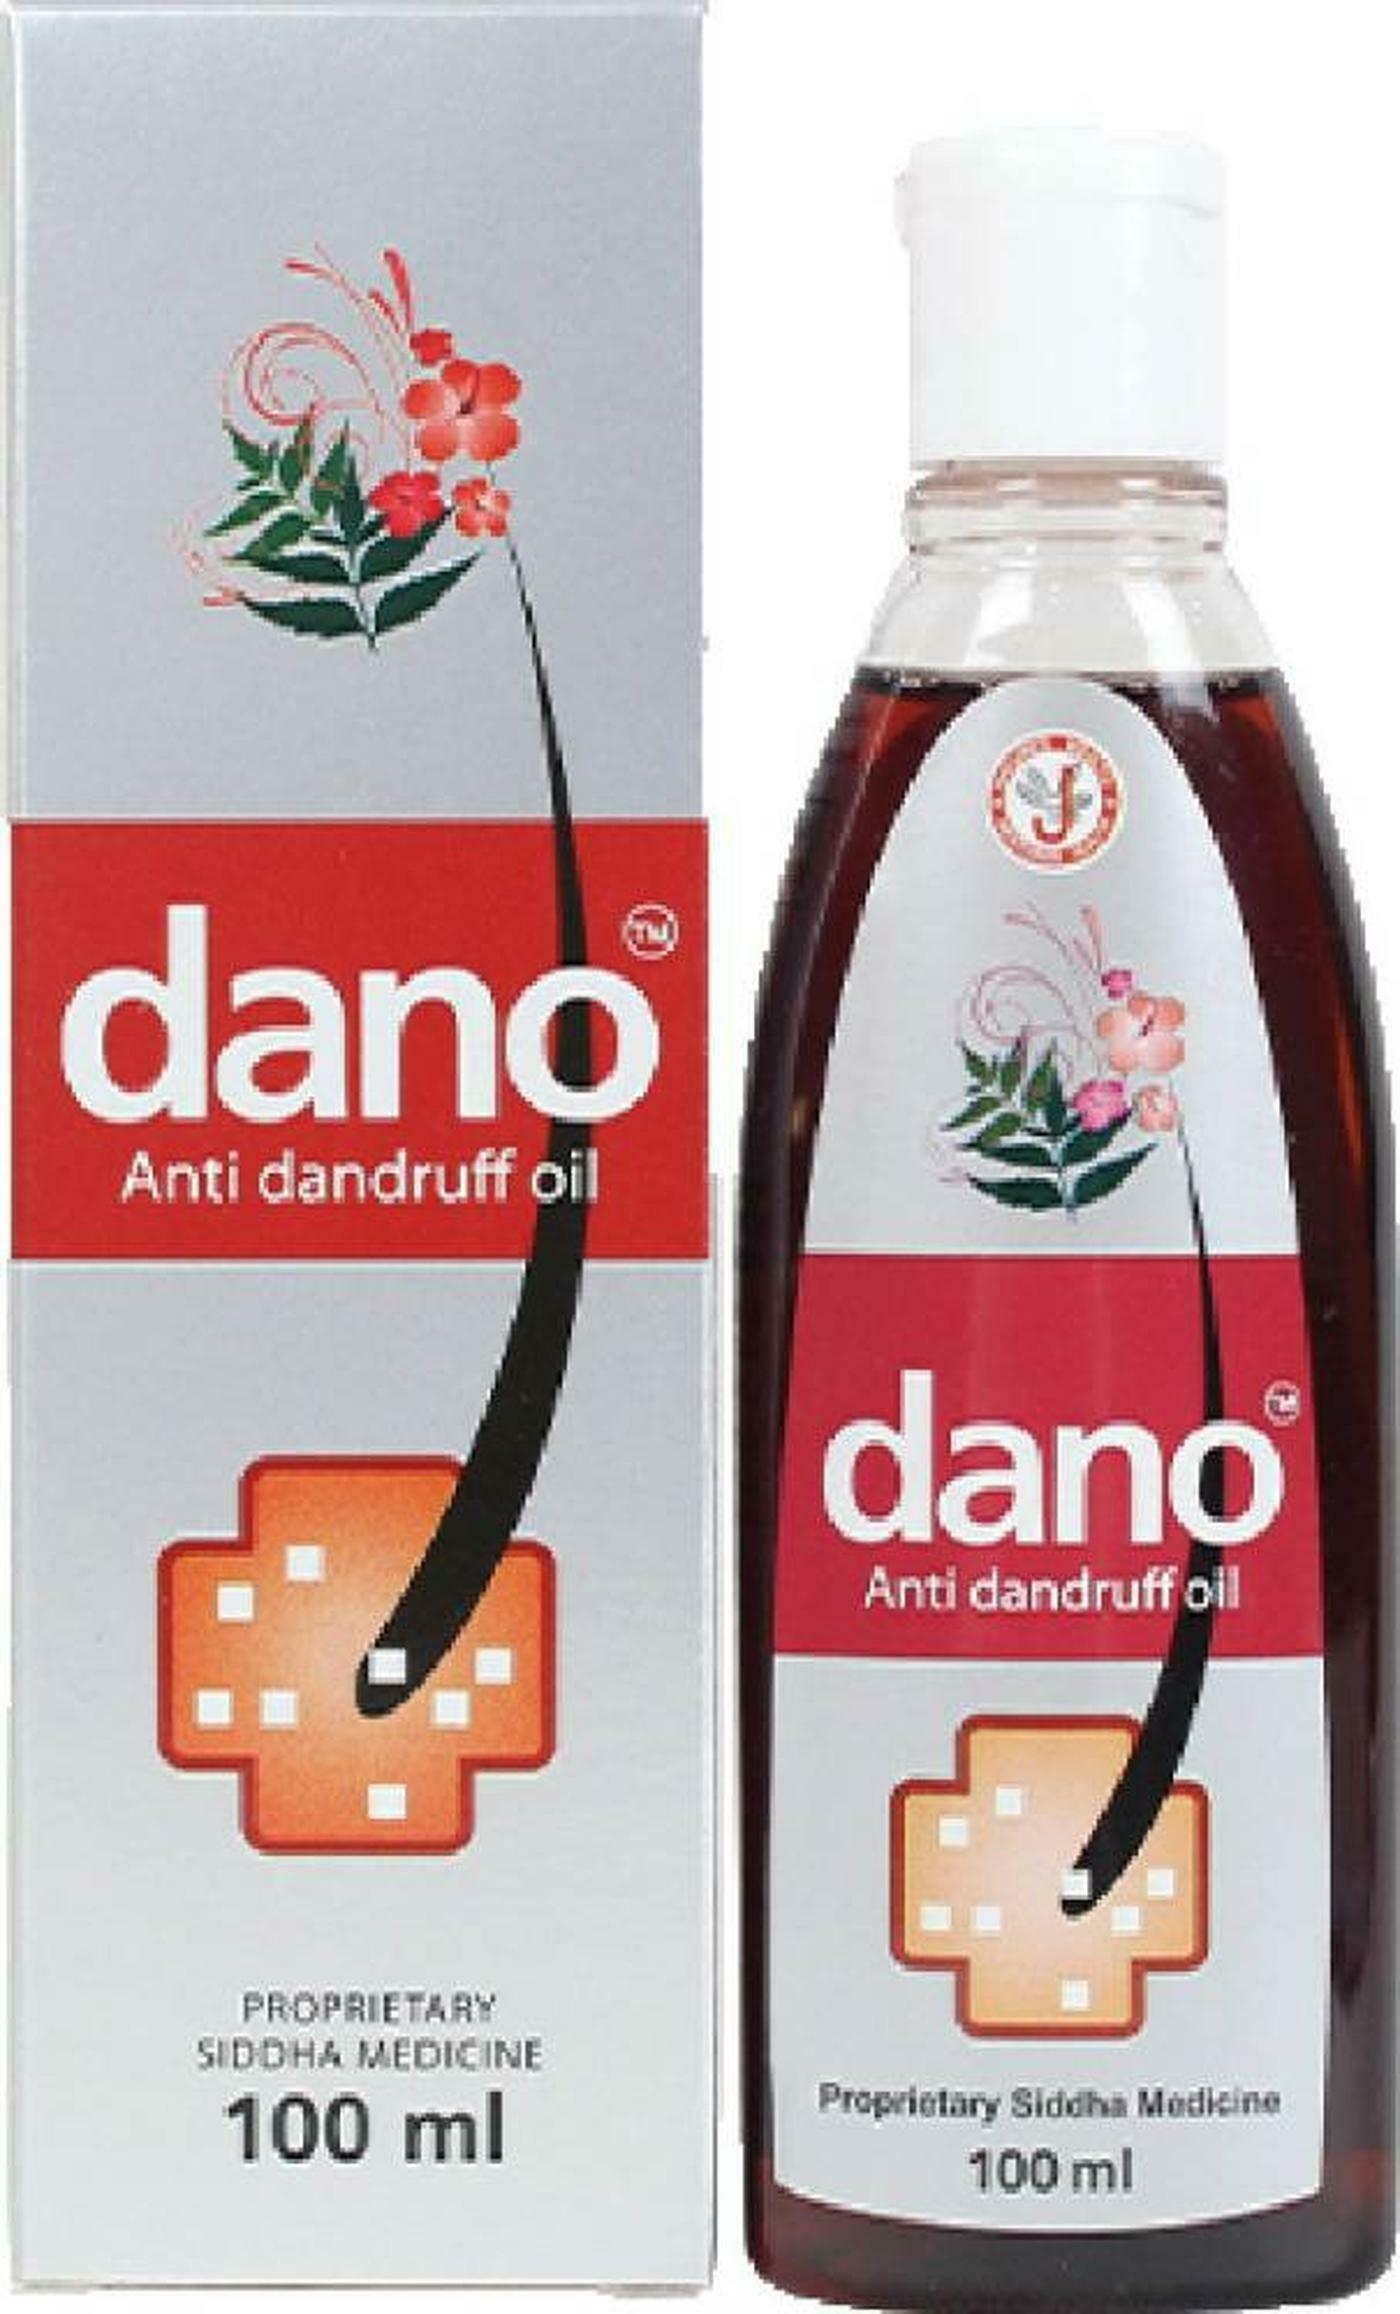 's Dano Anti-dandruff Oil for Hair Care 100 ml - JioMart